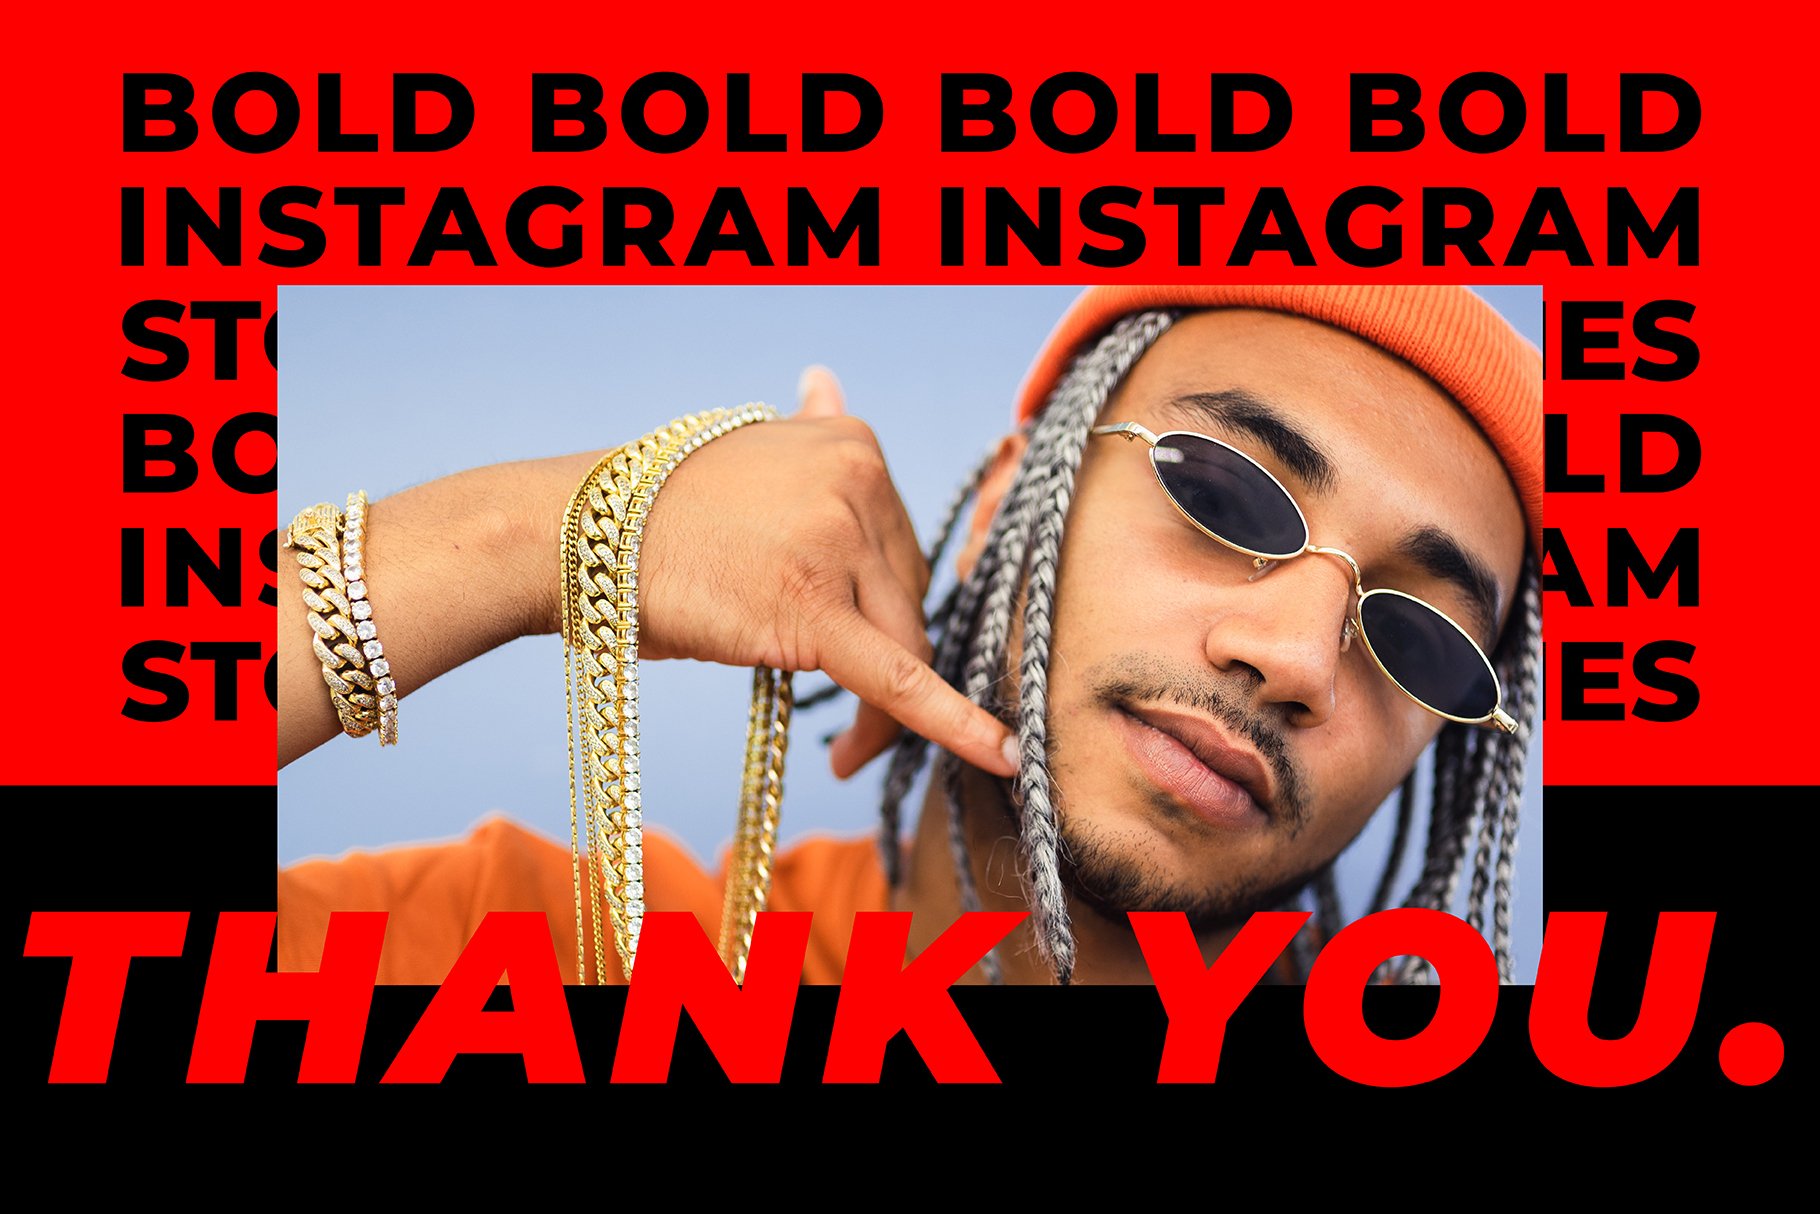 BOLD-潮流嘻哈复古高级Instagram竖屏错版大文字故事动画设计（4084）图层云